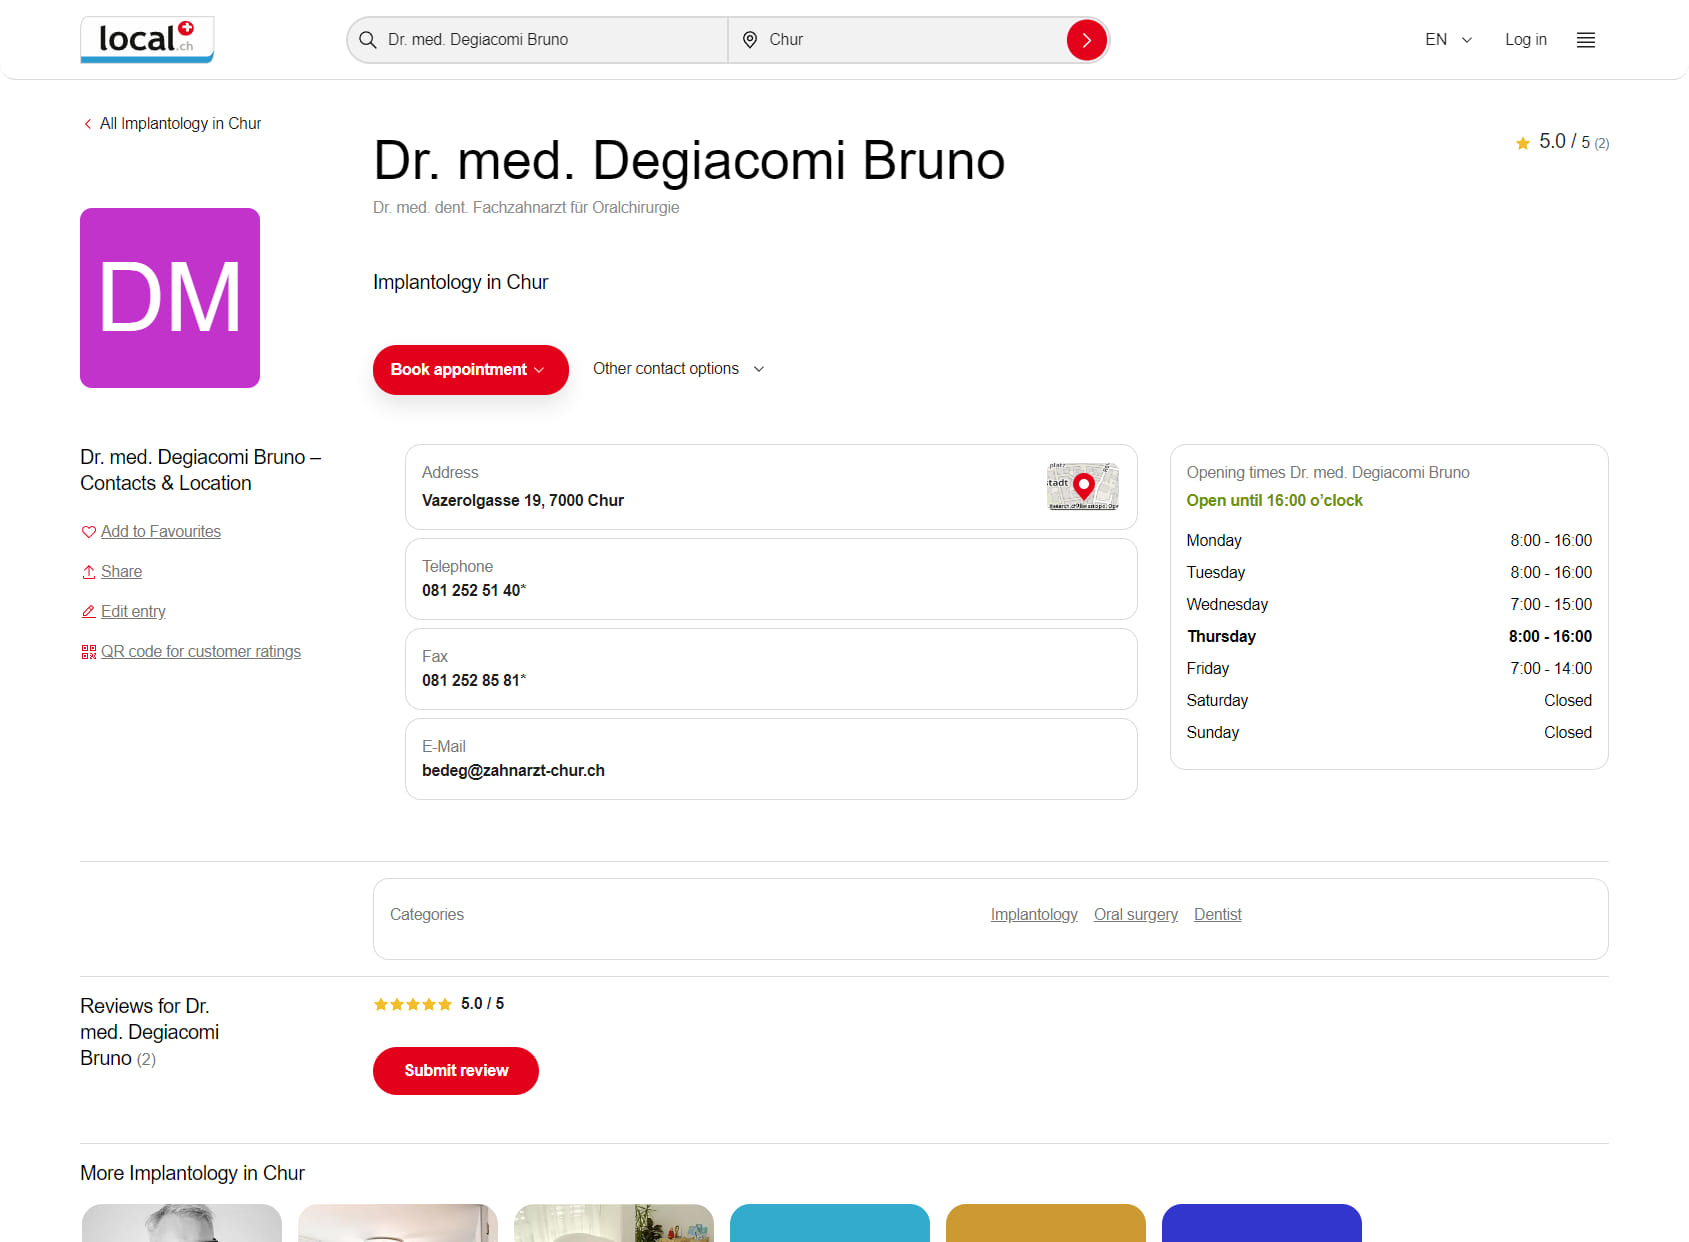 Dr. med. Degiacomi Bruno